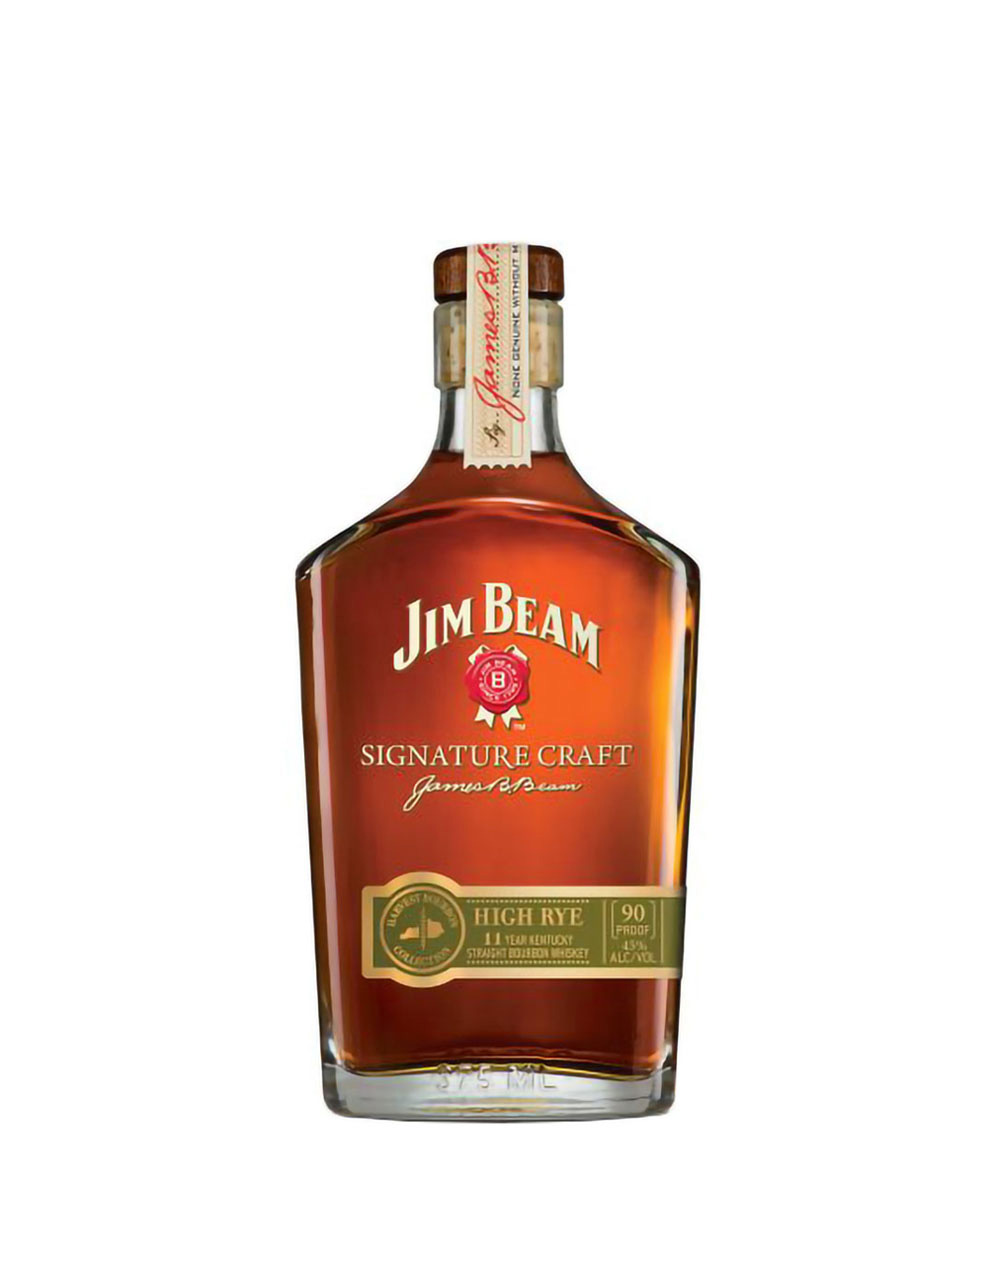 Jim Beam Signature Craft High Rye 11 Year Old Kentucky Straight Bourbon